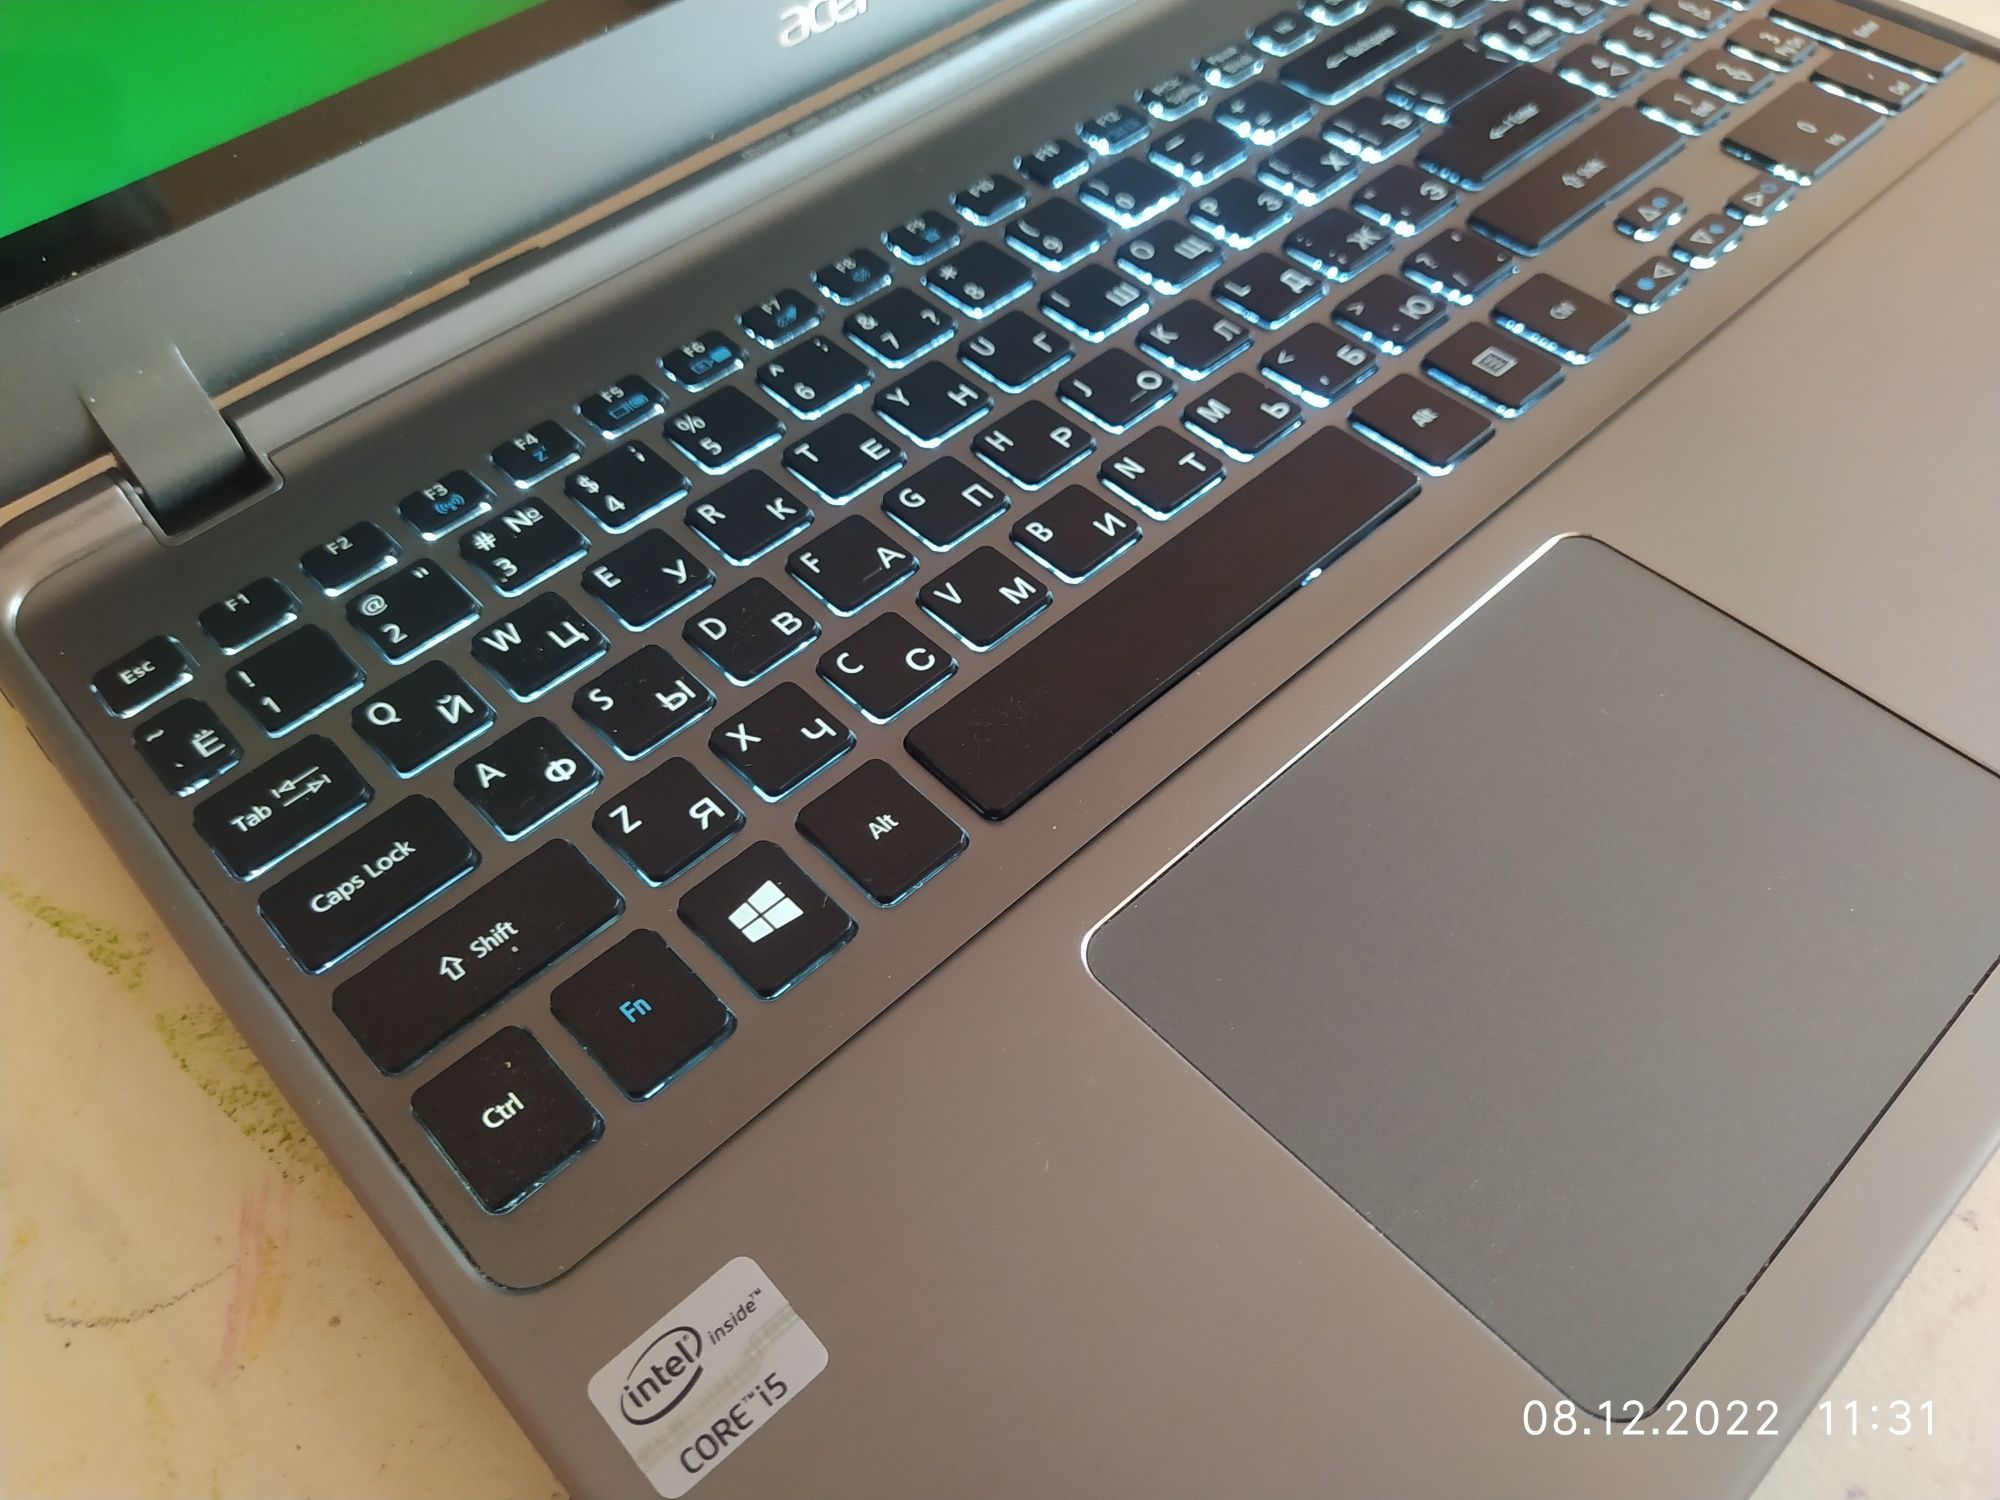 Ультрабук Acer m5 (ноутбук)